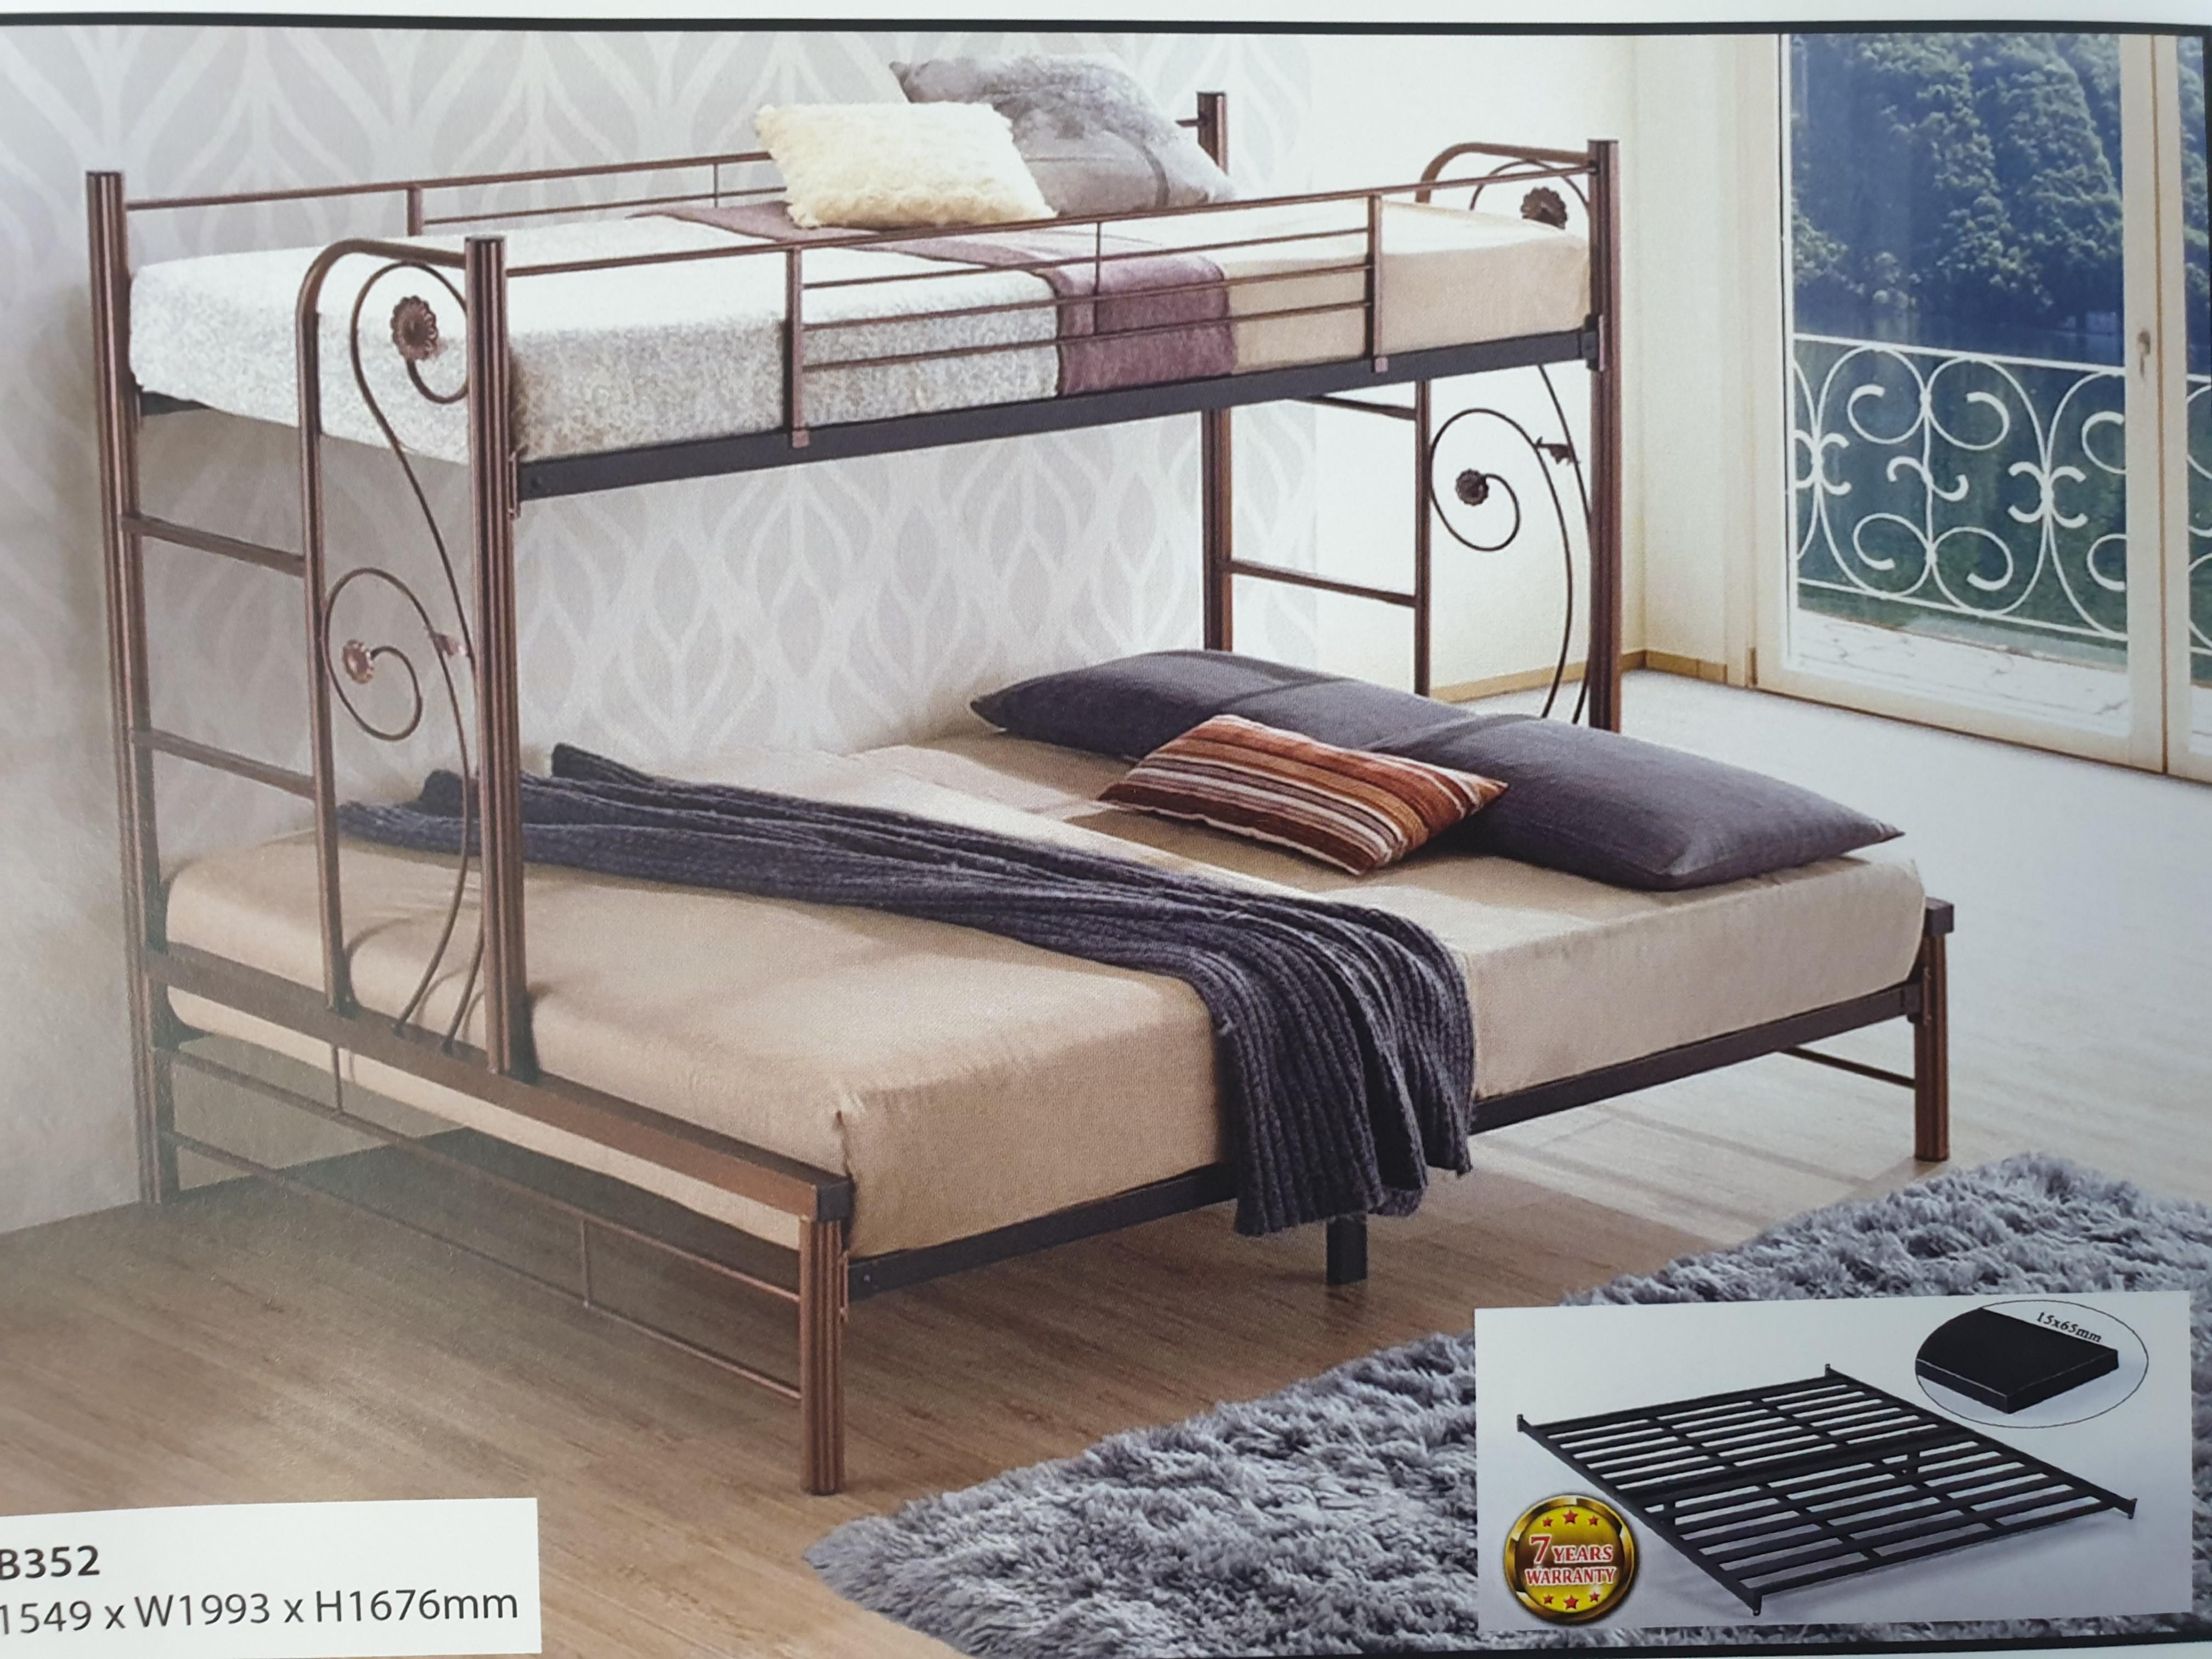 Kimart Mother Son Bed Frame Furniture Beds Mattresses On